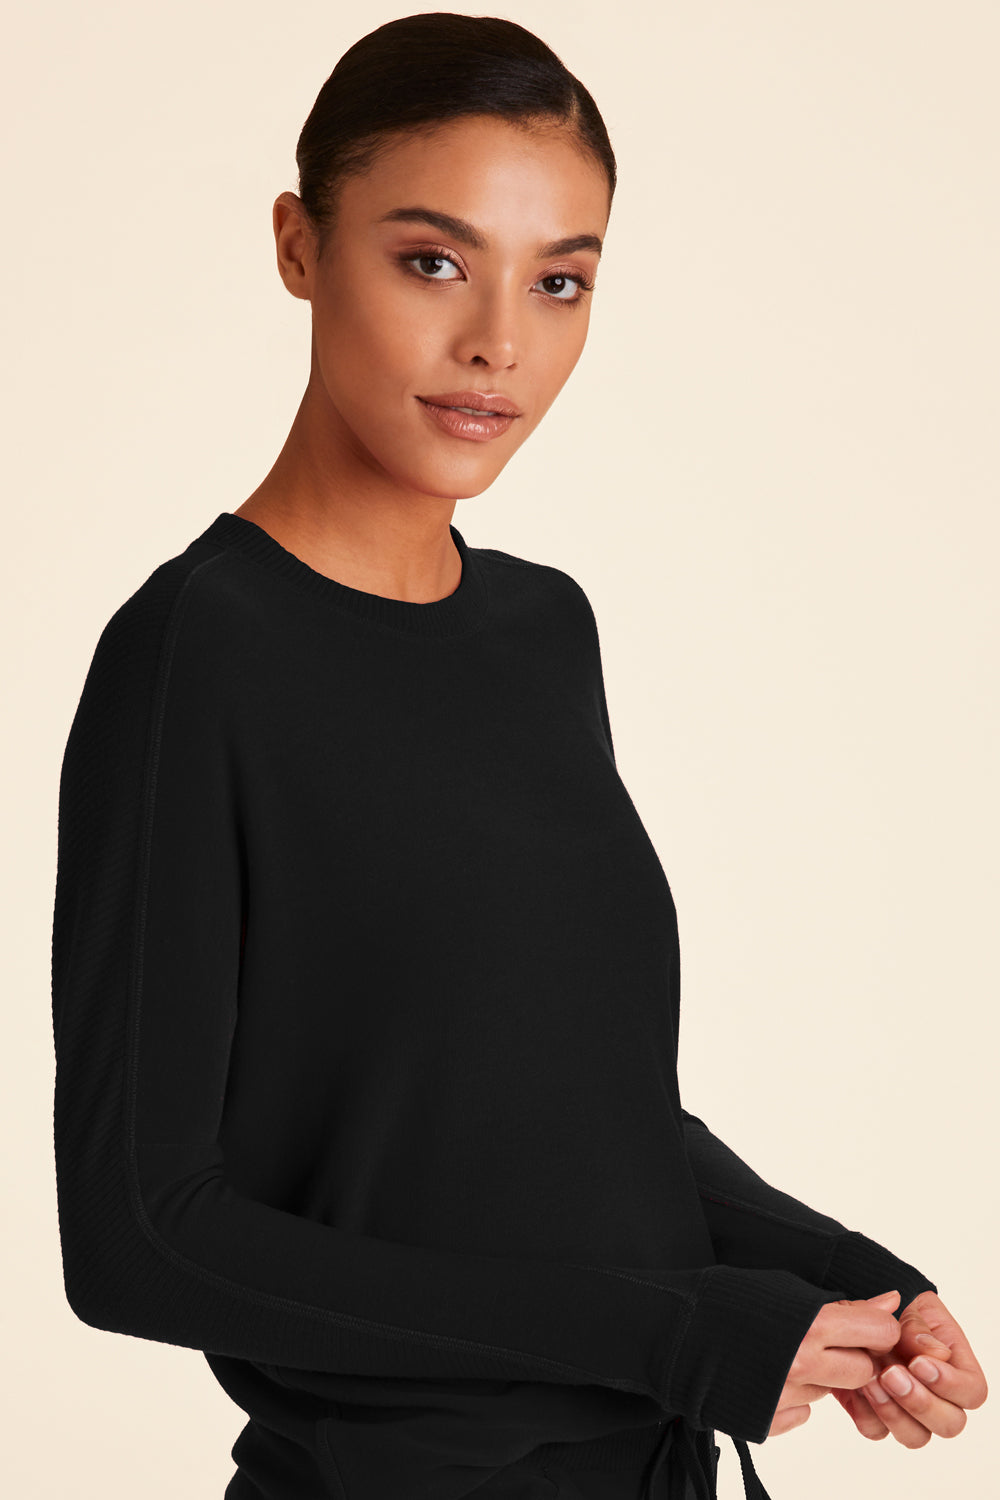 Alala women's rise sweatshirt in black